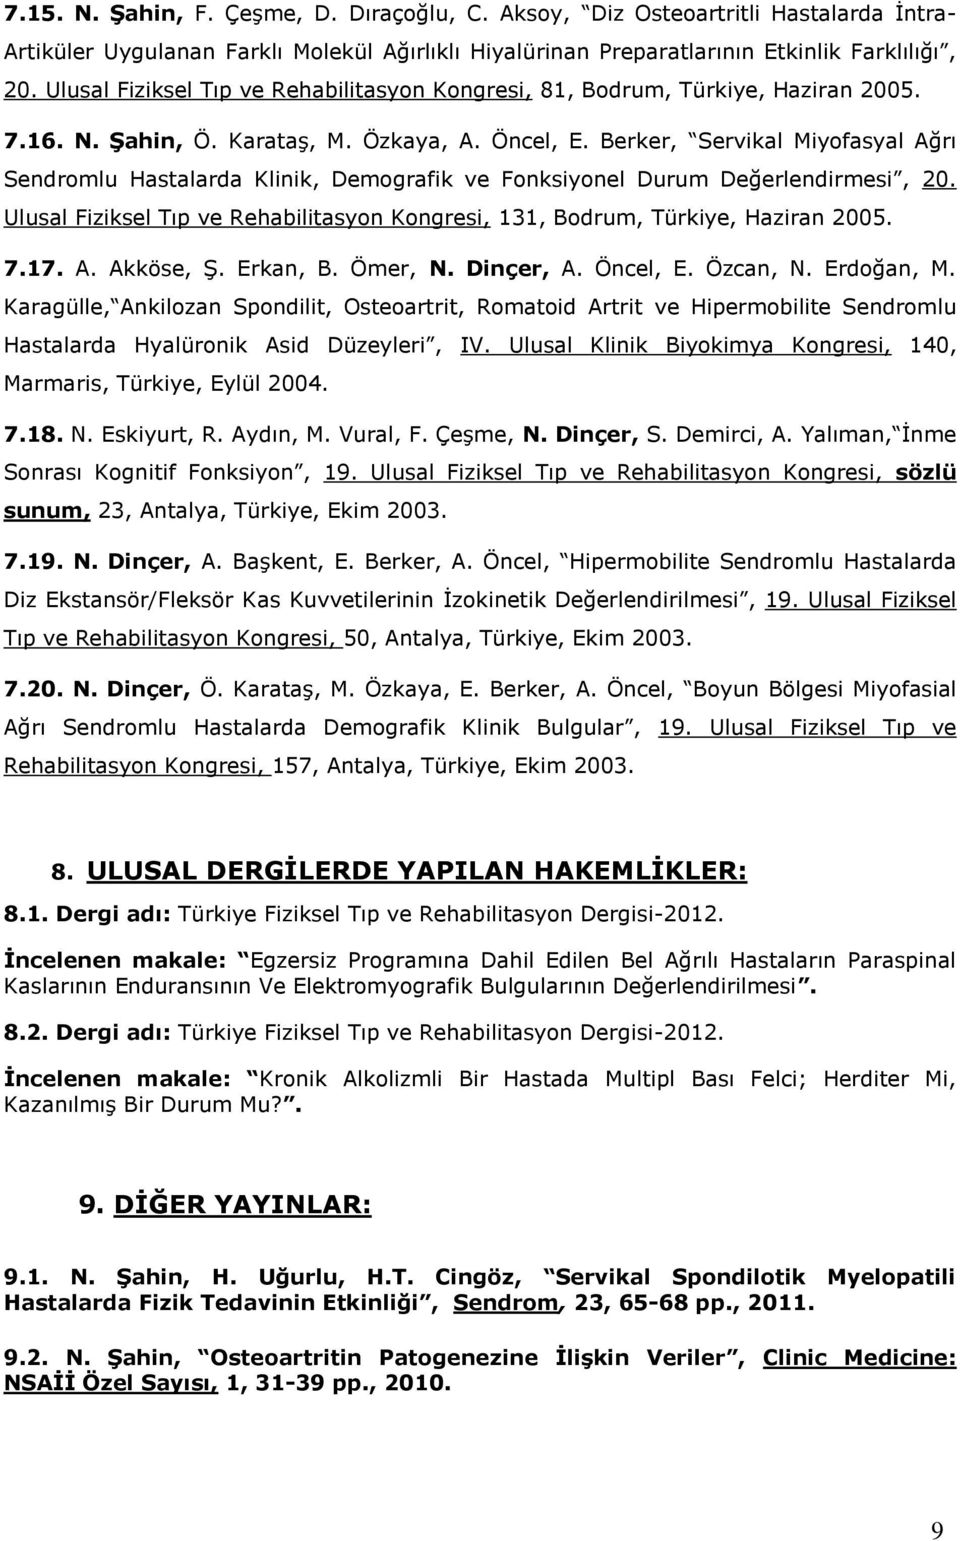 Berker, Servikal Miyofasyal Ağrı Sendromlu Hastalarda Klinik, Demografik ve Fonksiyonel Durum Değerlendirmesi, 20. Ulusal Fiziksel Tıp ve Rehabilitasyon Kongresi, 131, Bodrum, Türkiye, Haziran 2005.